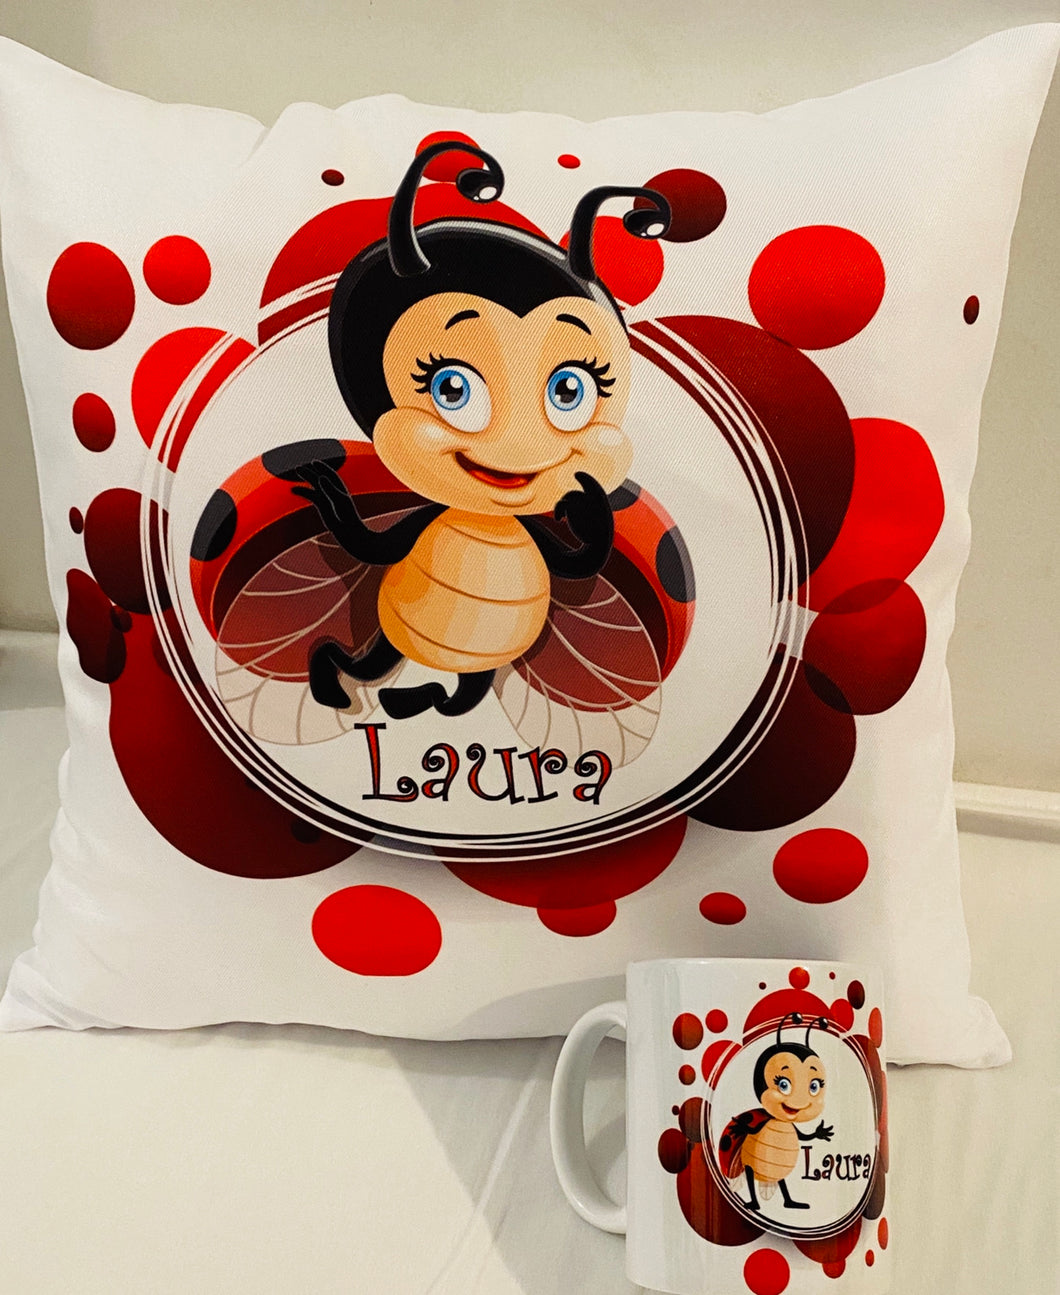 Ladybug cushion and mug set